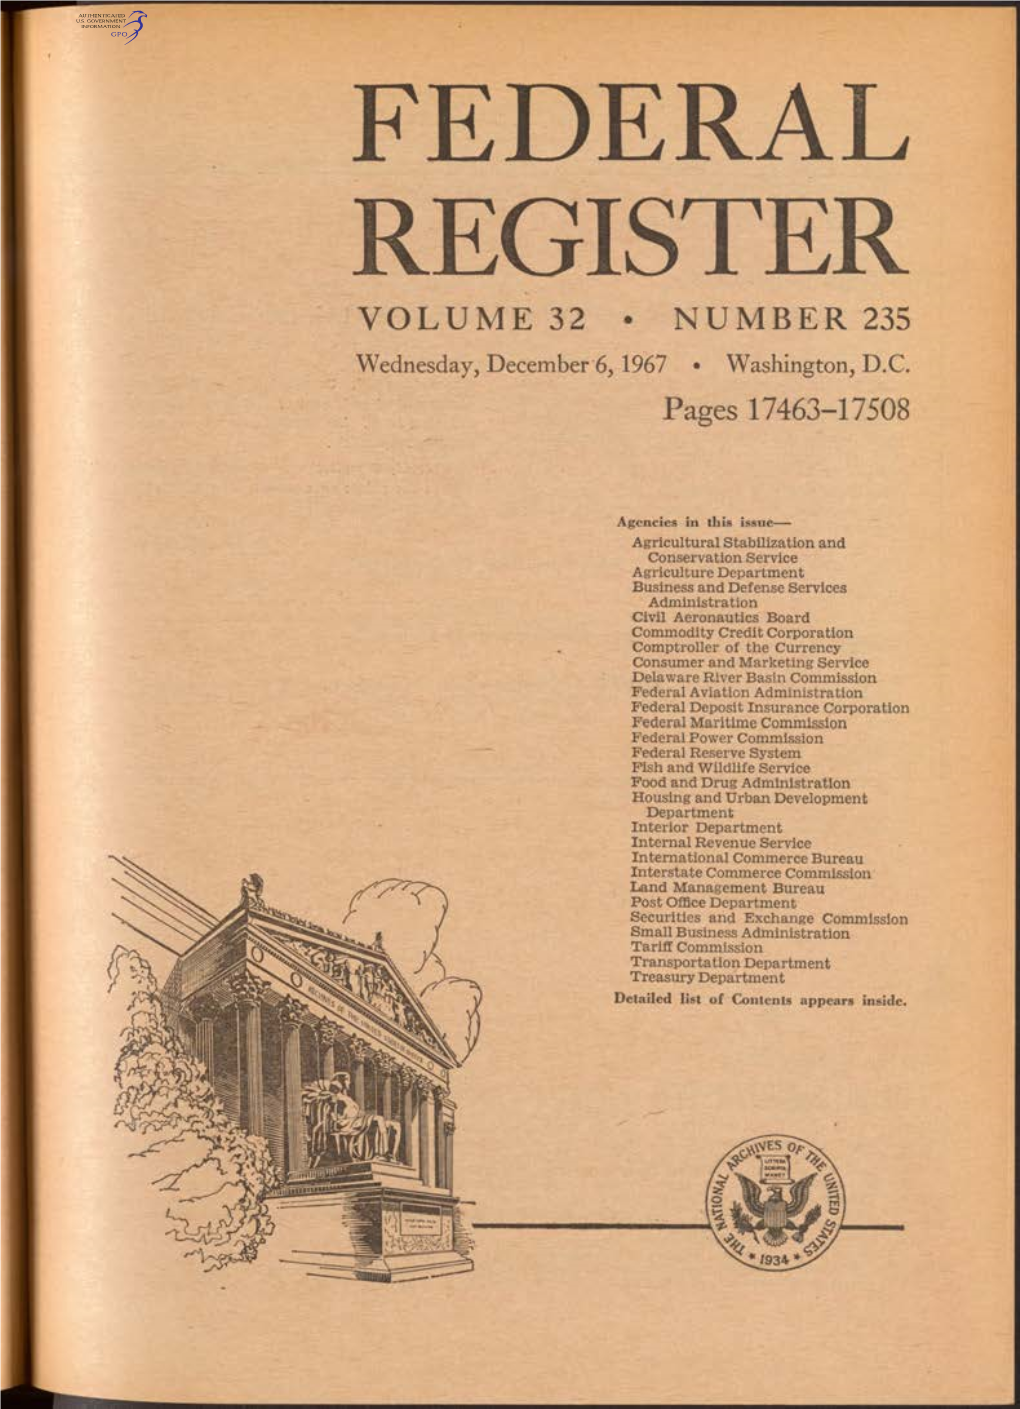 FEDERAL REGISTER VOLUME 32 • NUMBER 235 Wednesday, December 6, 1967 • Washington, D.C